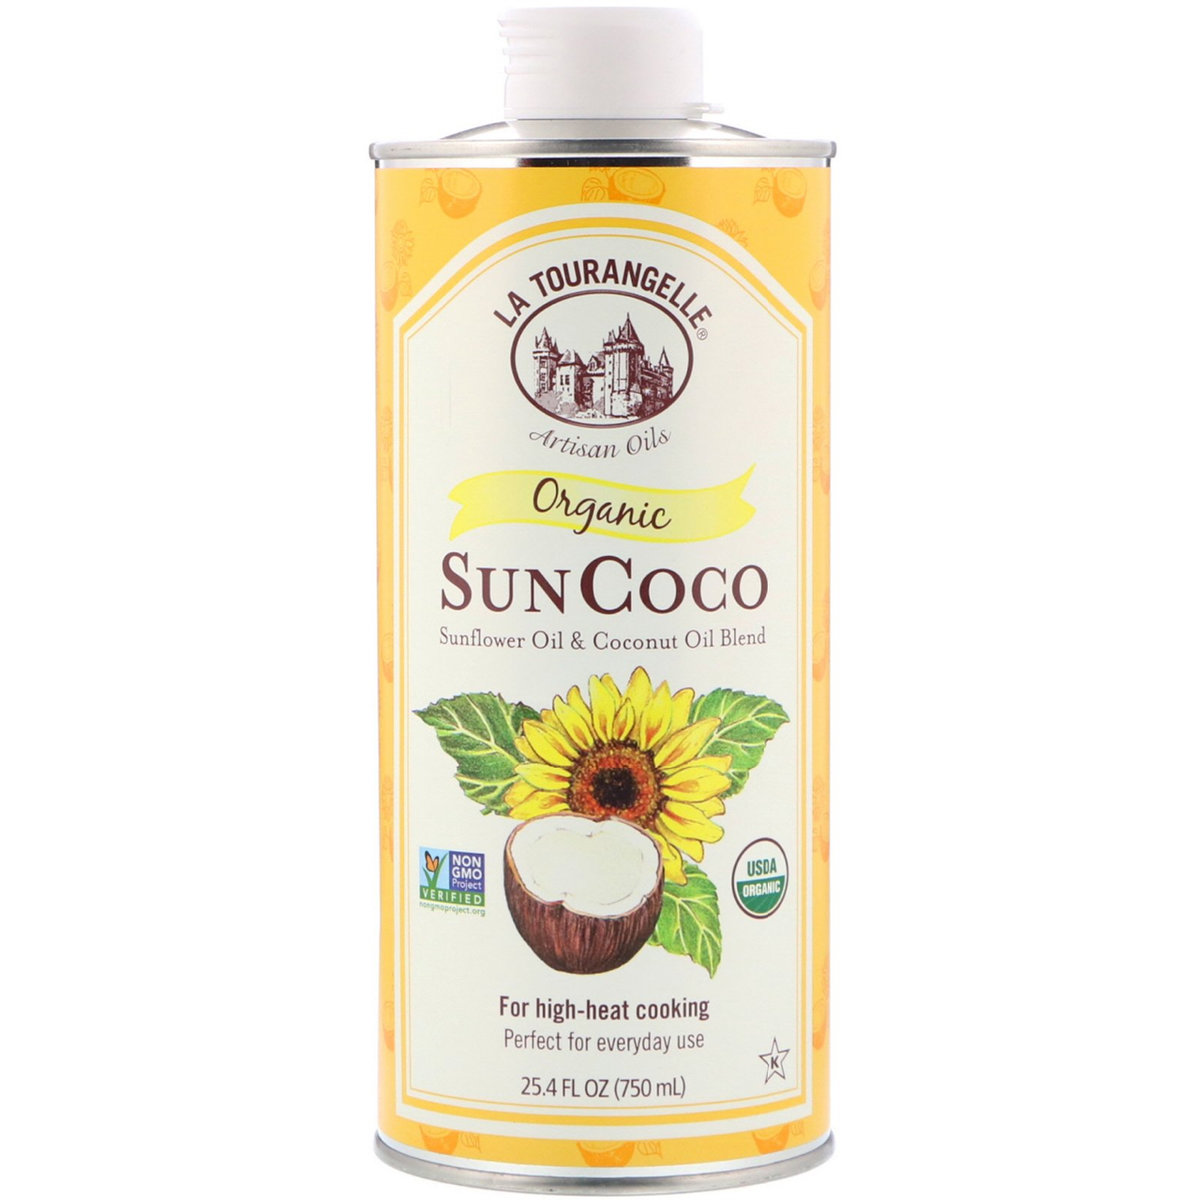 La Tour - Organic Sun Coco Oil - 750ml